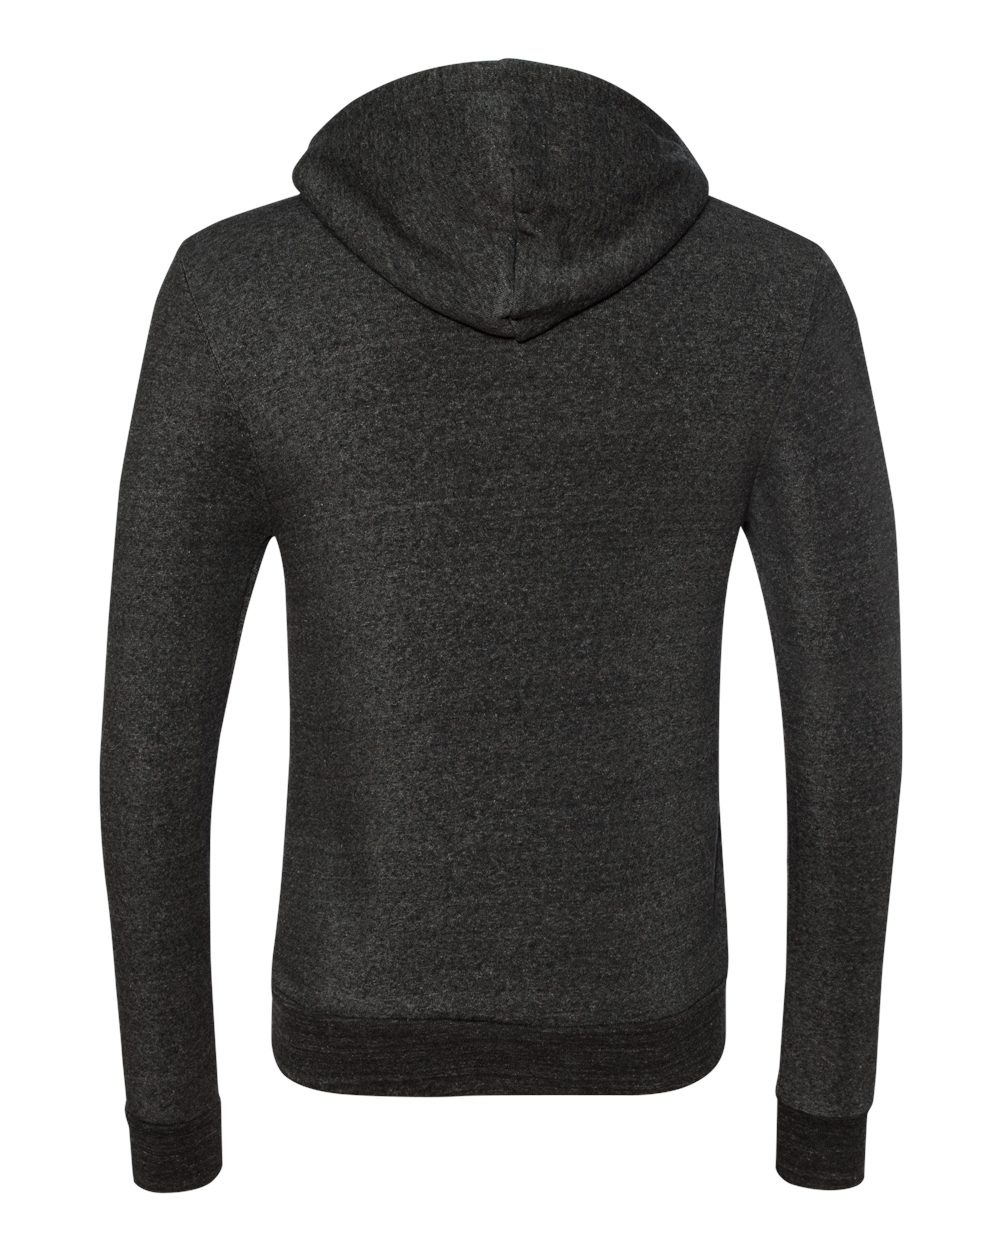 Alternative Mens Eco-Fleece Rocky Hooded Full-Zip Sweatshirt 9590 up to ...